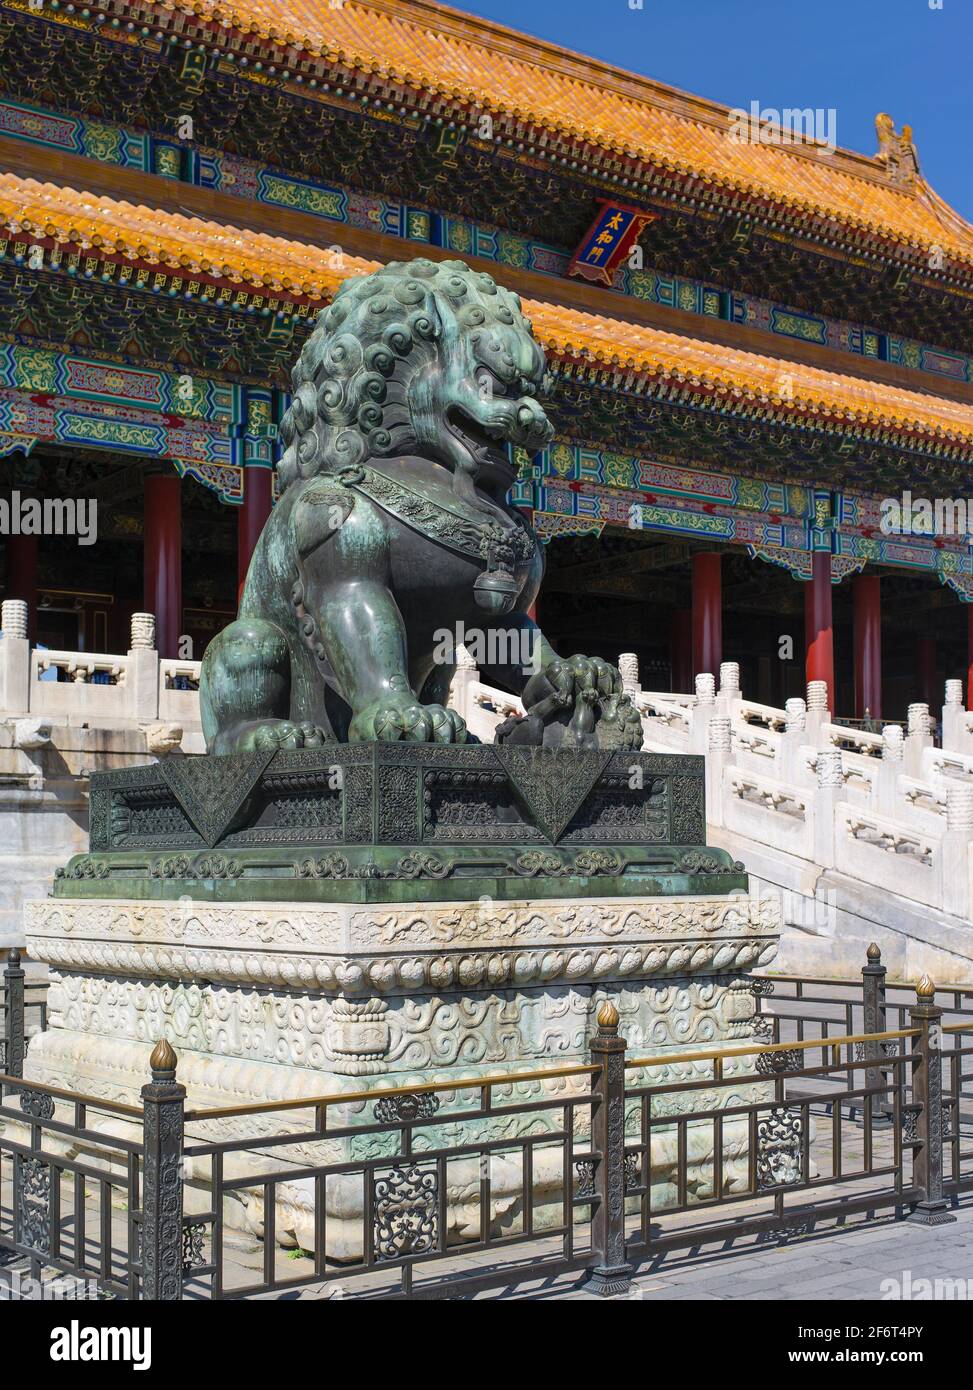 La Ciudad Prohibida fue el palacio imperial chino desde la Dinastía Ming hasta el final de la Dinastía Qing. Está situado en el centro de Pekín, Foto de stock